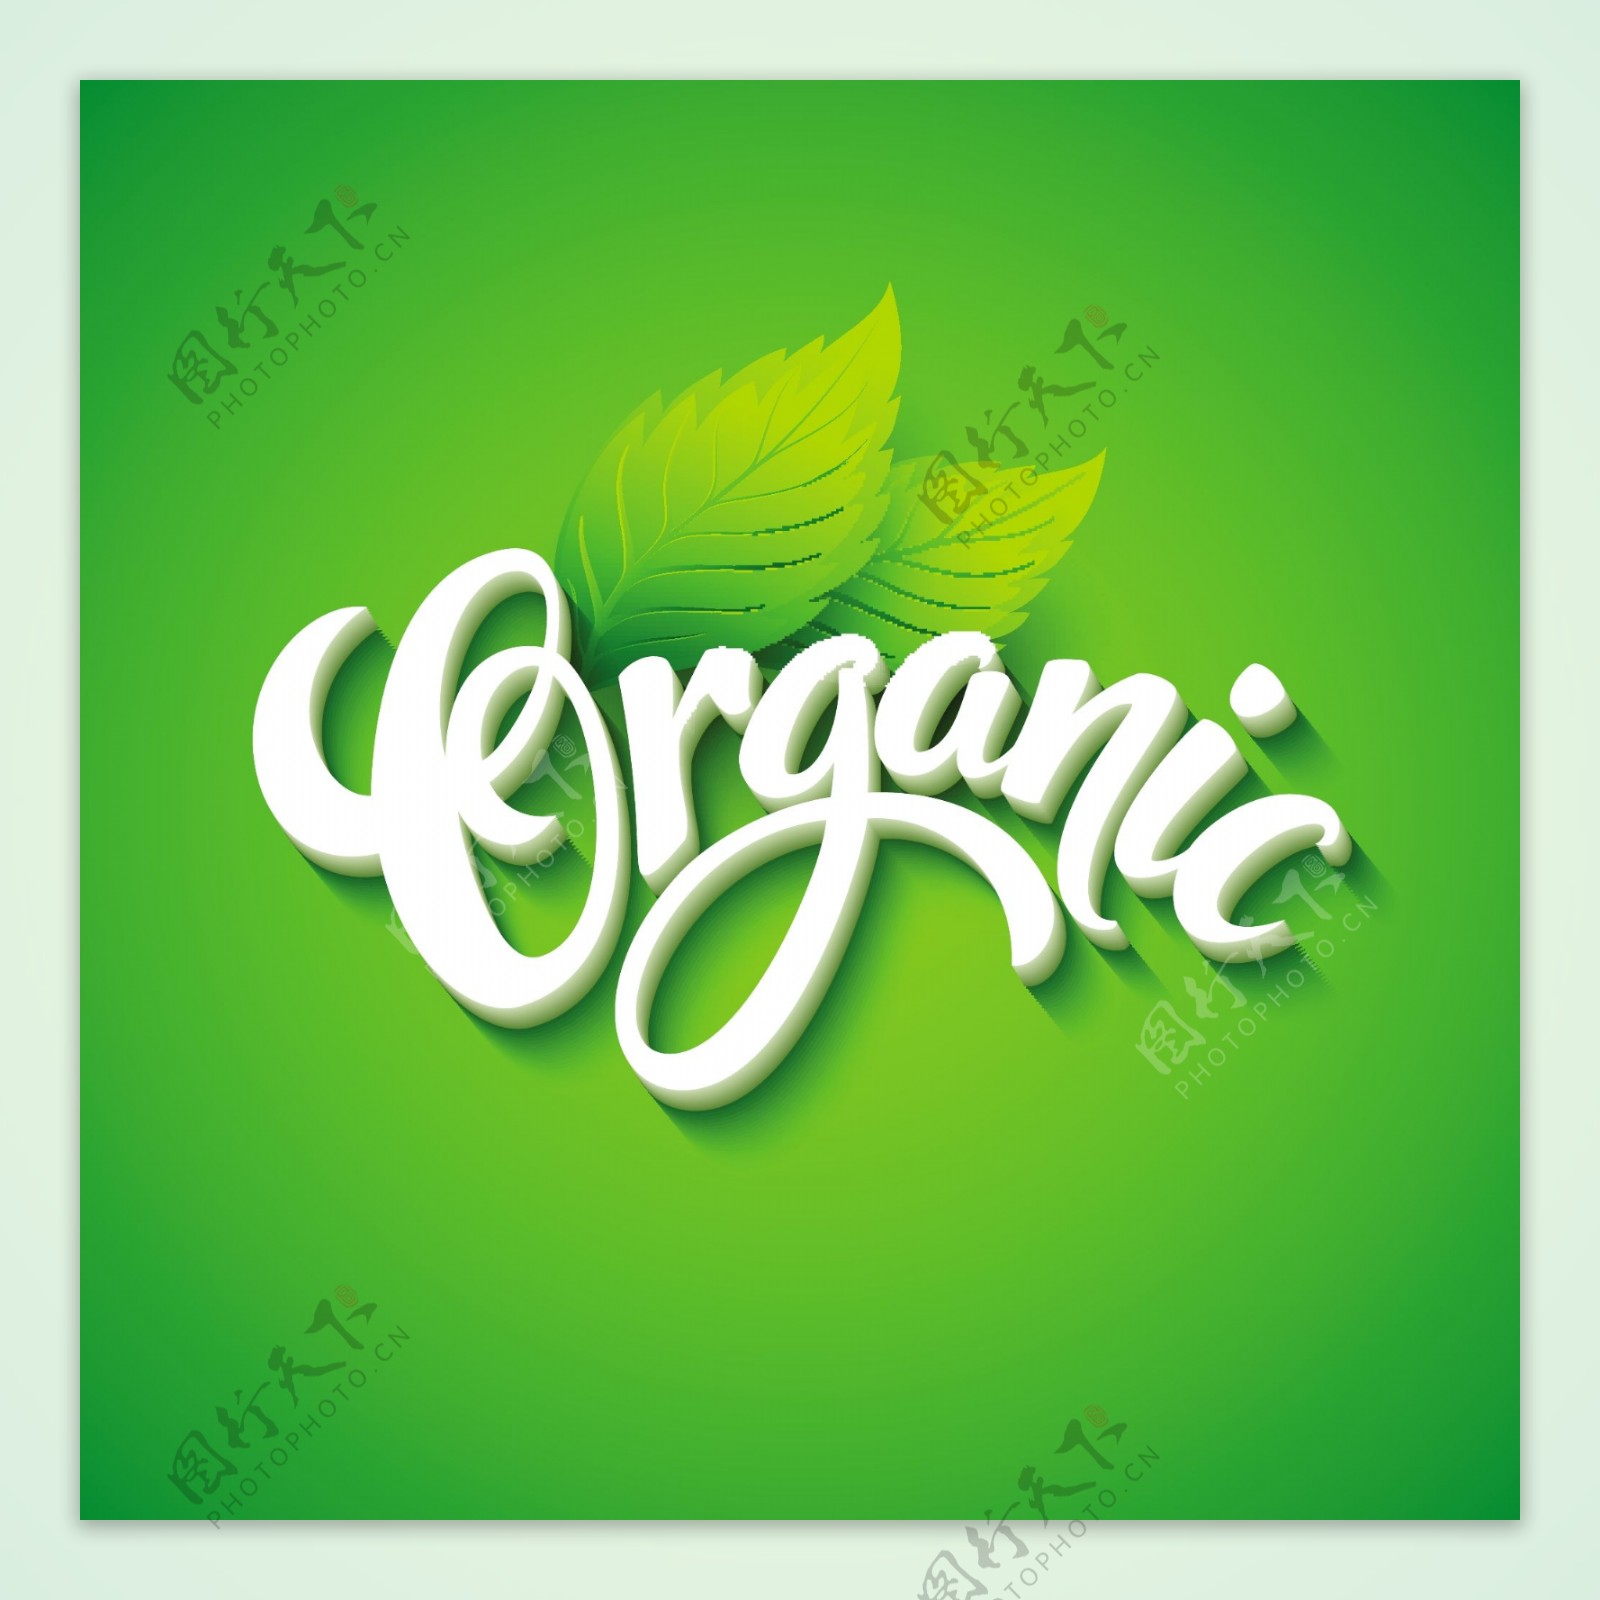 绿色植物白色立体文字logo矢量素材